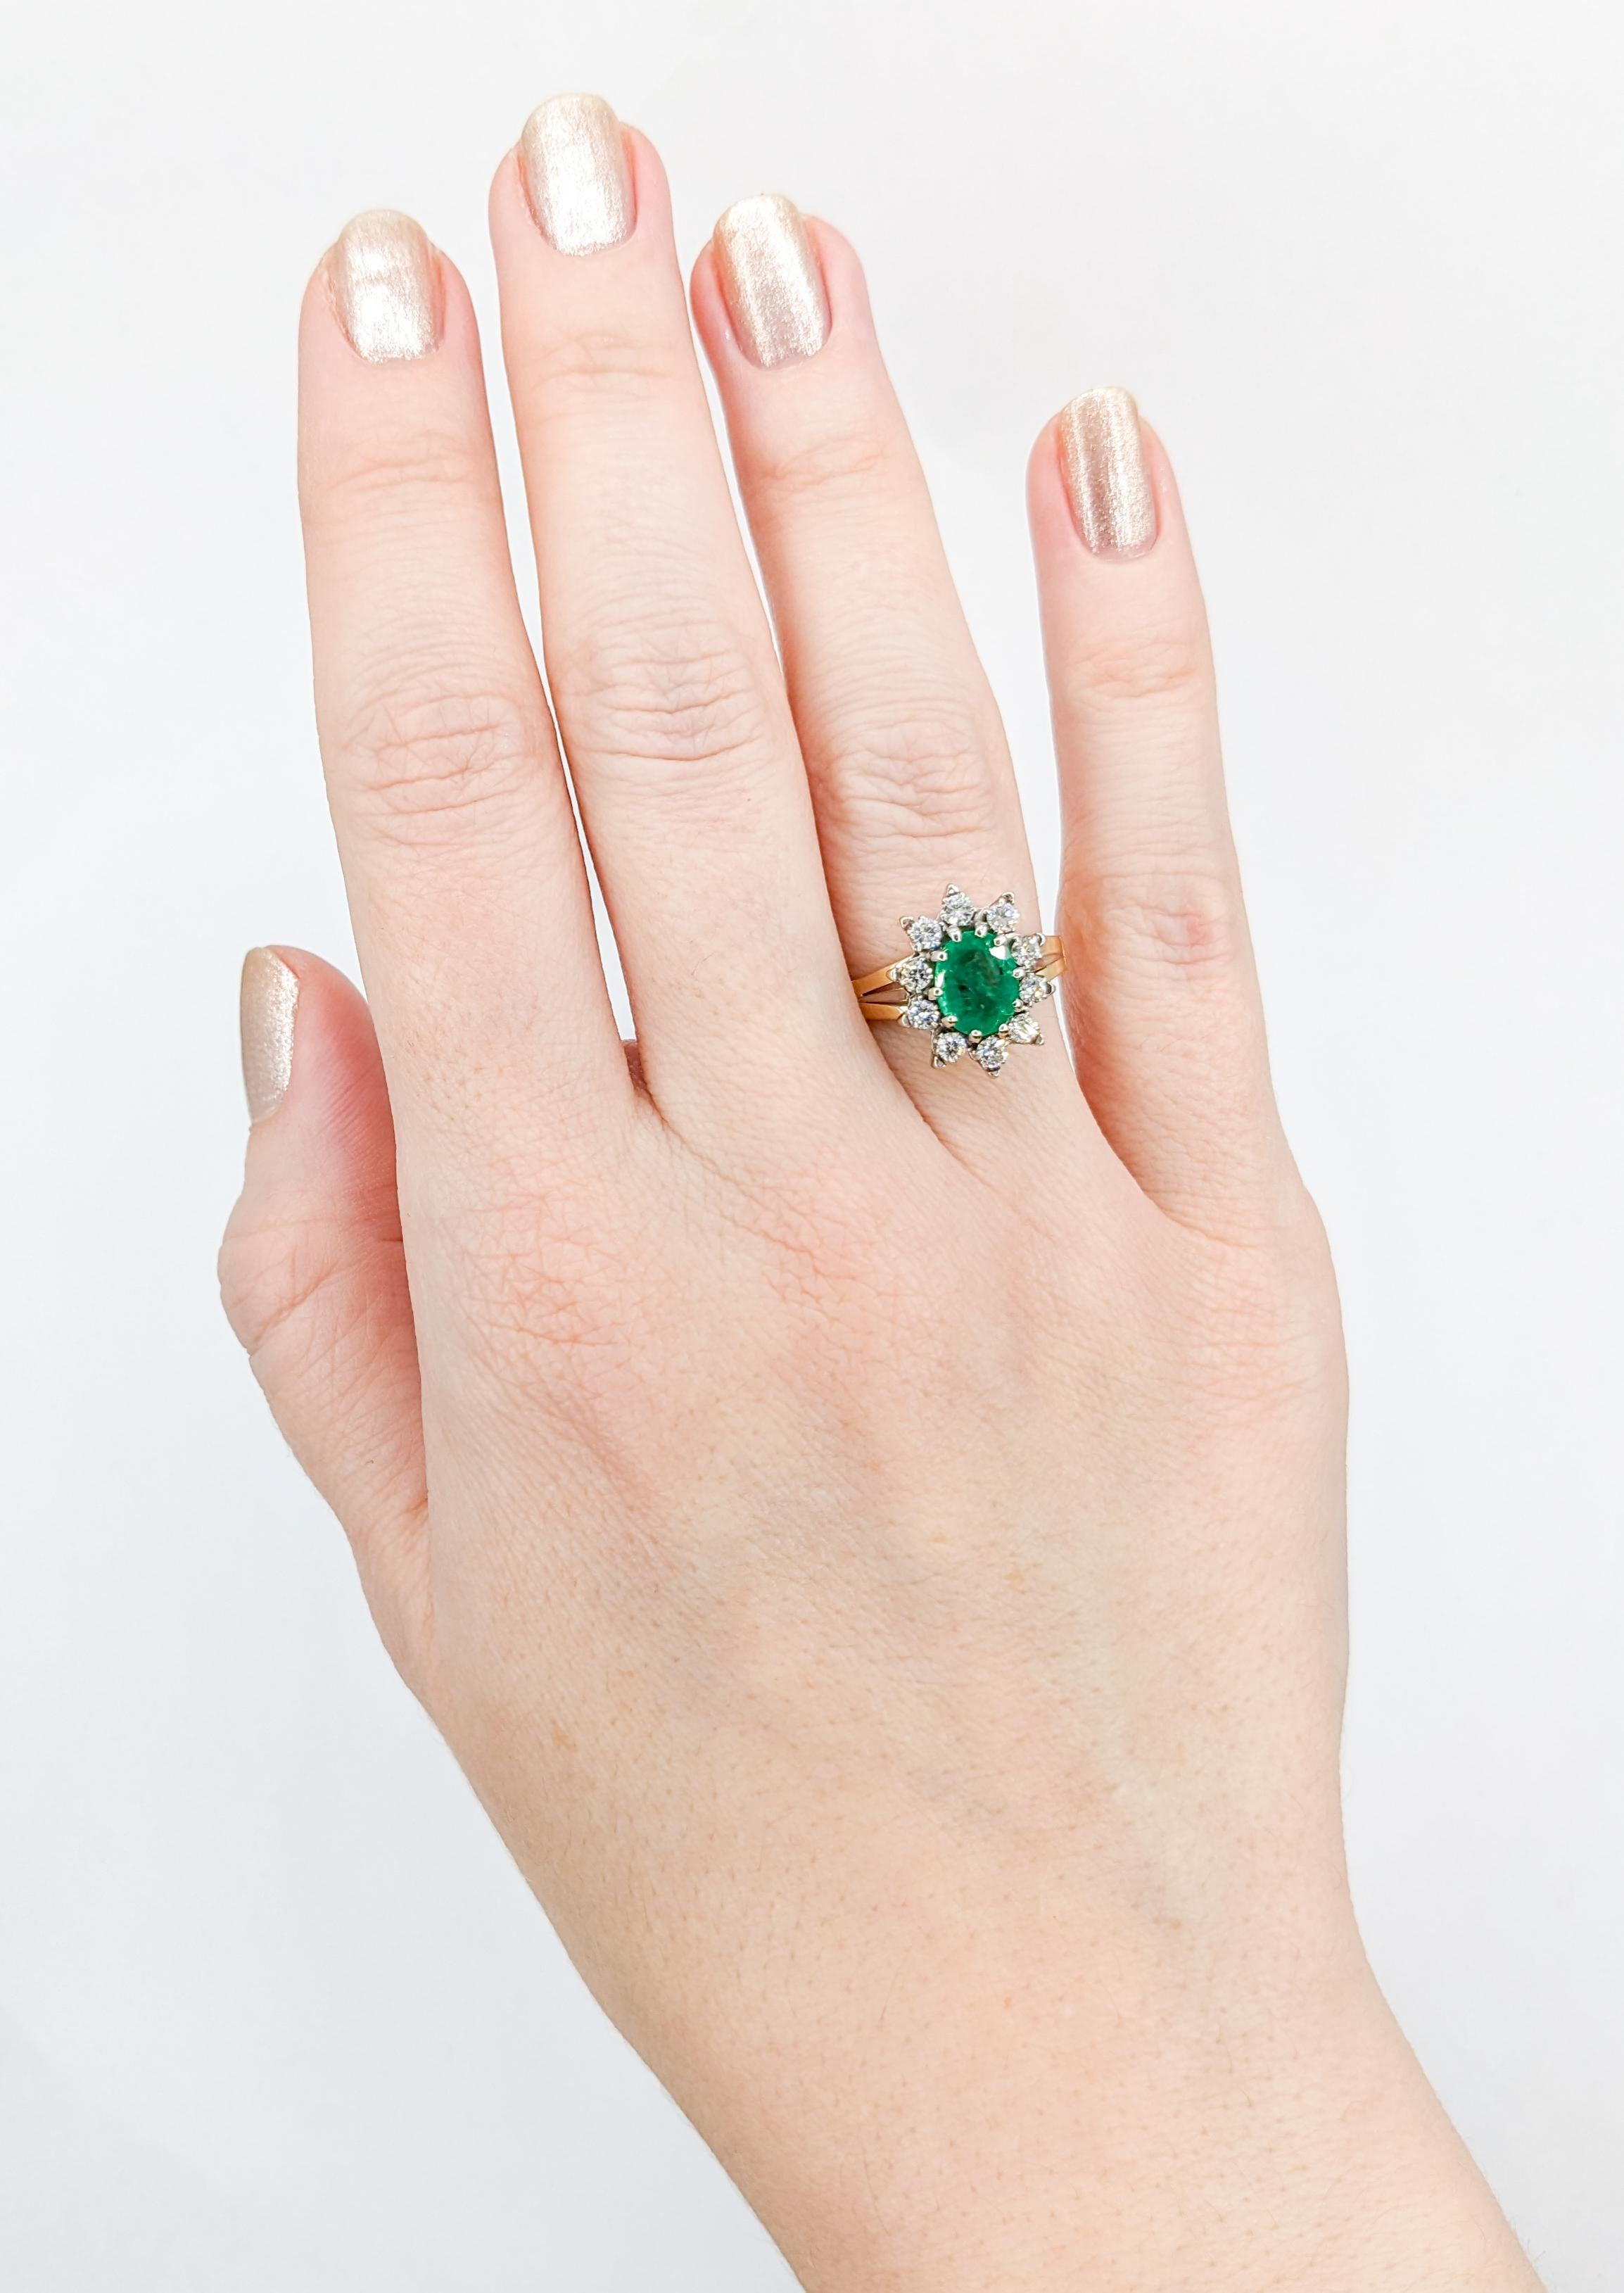 Göttlicher Vintage Smaragd & Diamant Ring in 18K Gold

Eleganz und Vintage-Charme treffen in diesem exquisiten Smaragdring aufeinander, der in fachmännischer Handarbeit aus strahlendem 18-karätigem Gelbgold mit einer Weißgoldfassung gefertigt wurde.